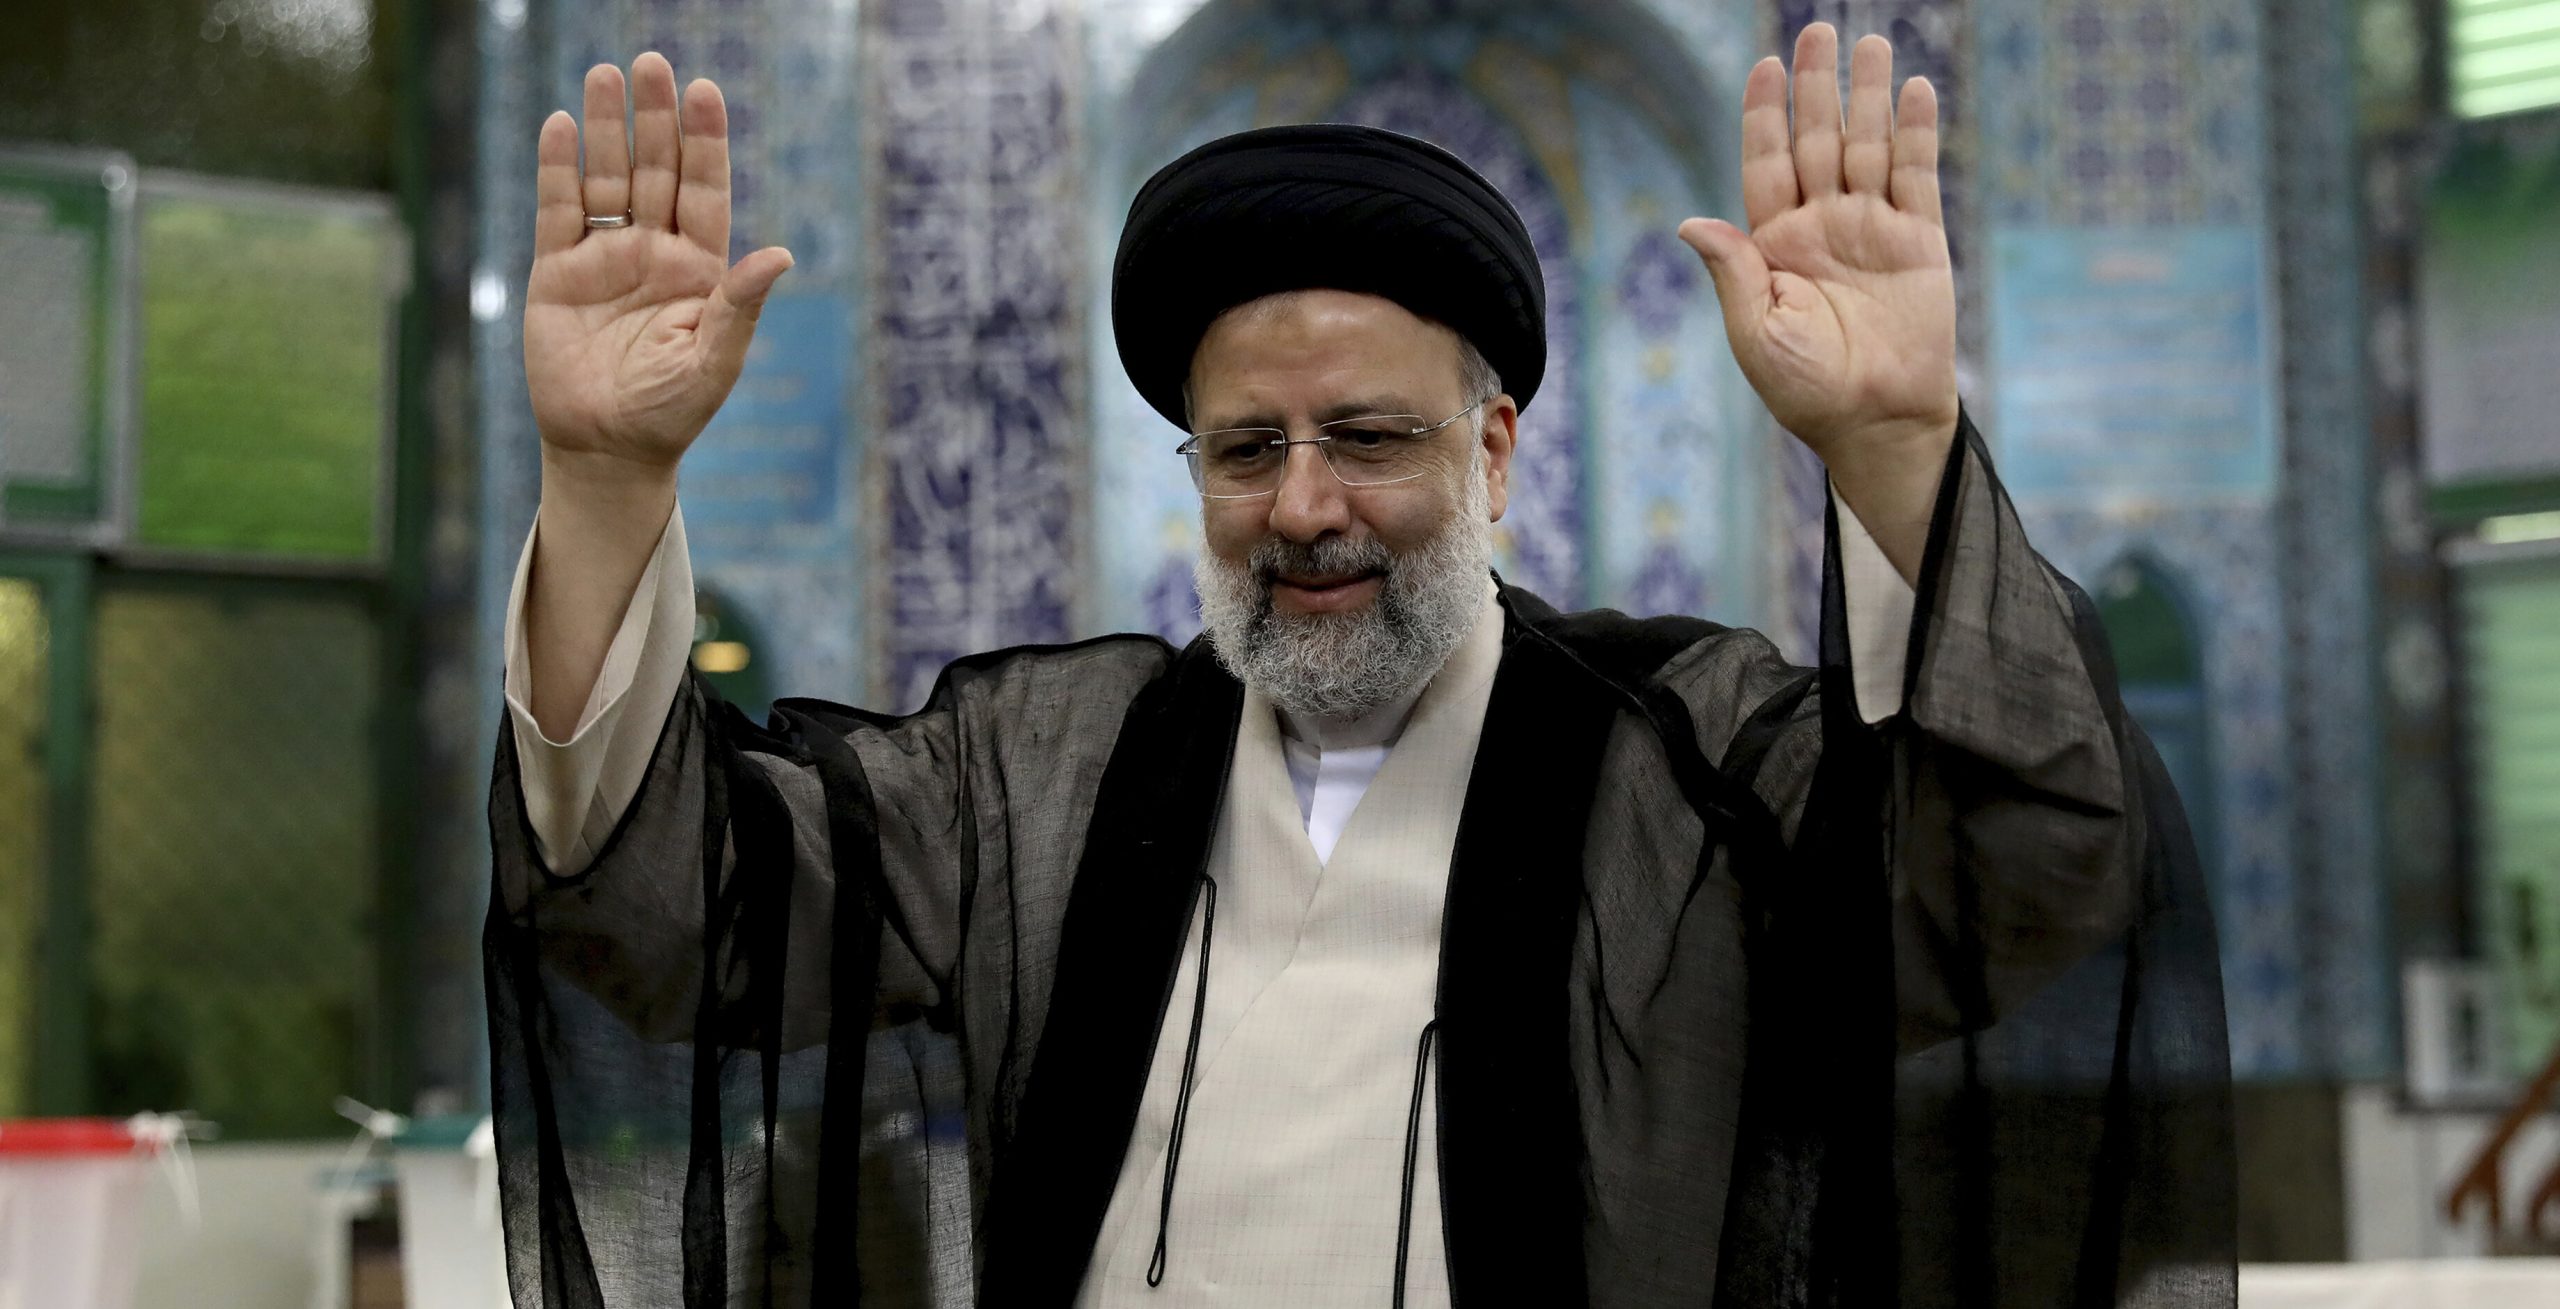 Ce știm despre Ebrahim Raisi, noul președinte al Iranului